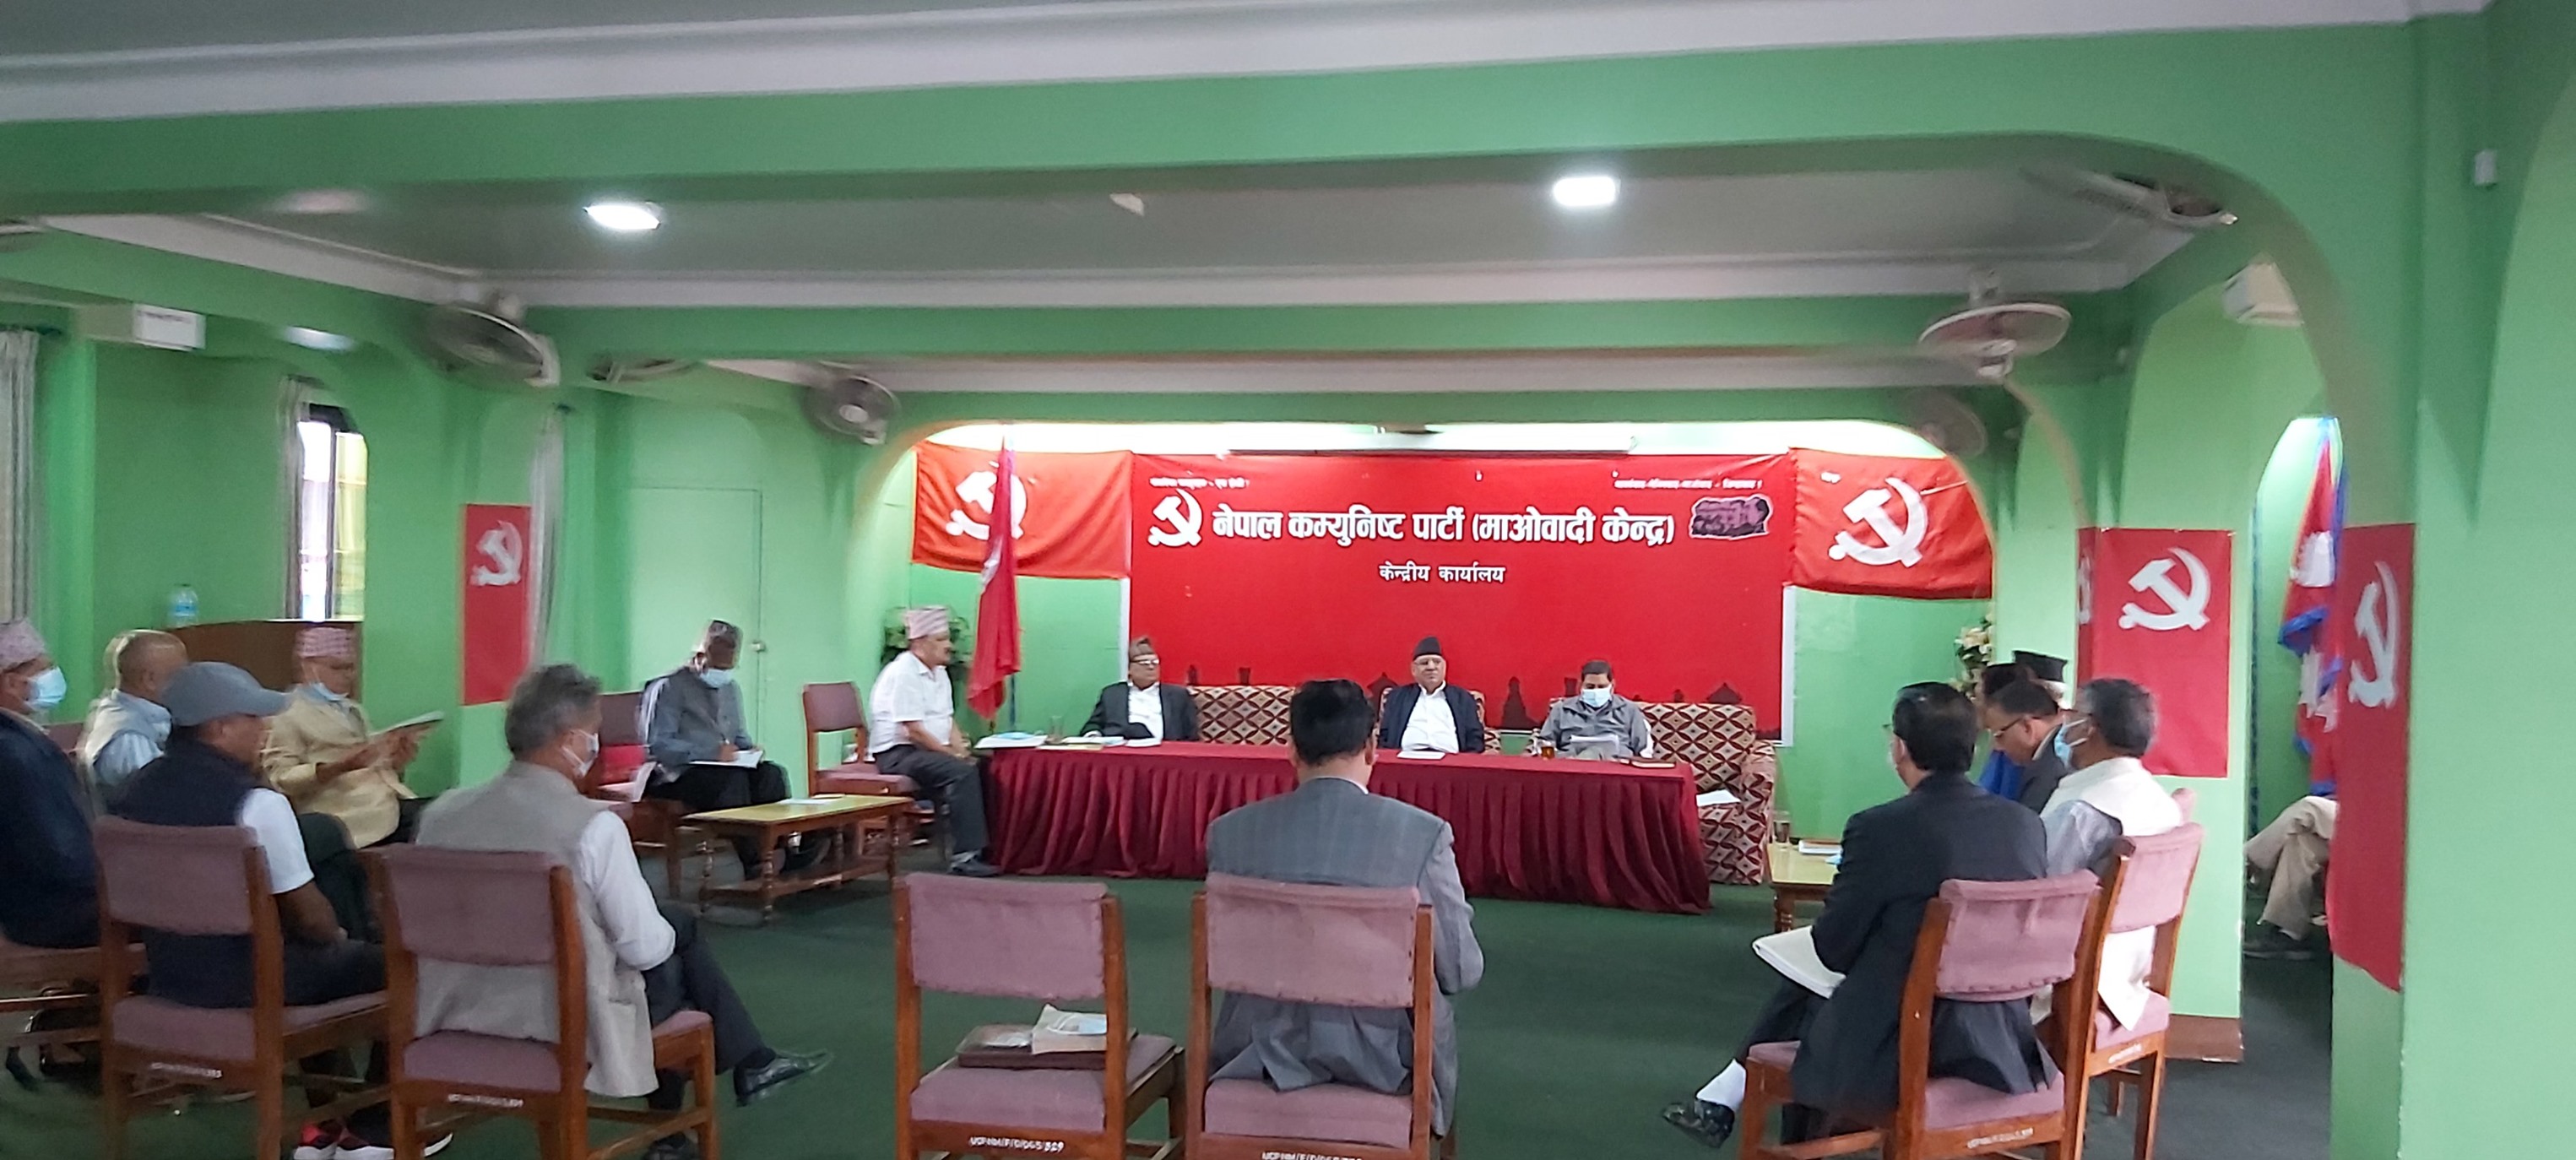 माओवादी केन्द्रकाे स्थायी समिति बैठकमा पार्टी सुदृढीकरण विषयमा छलफल